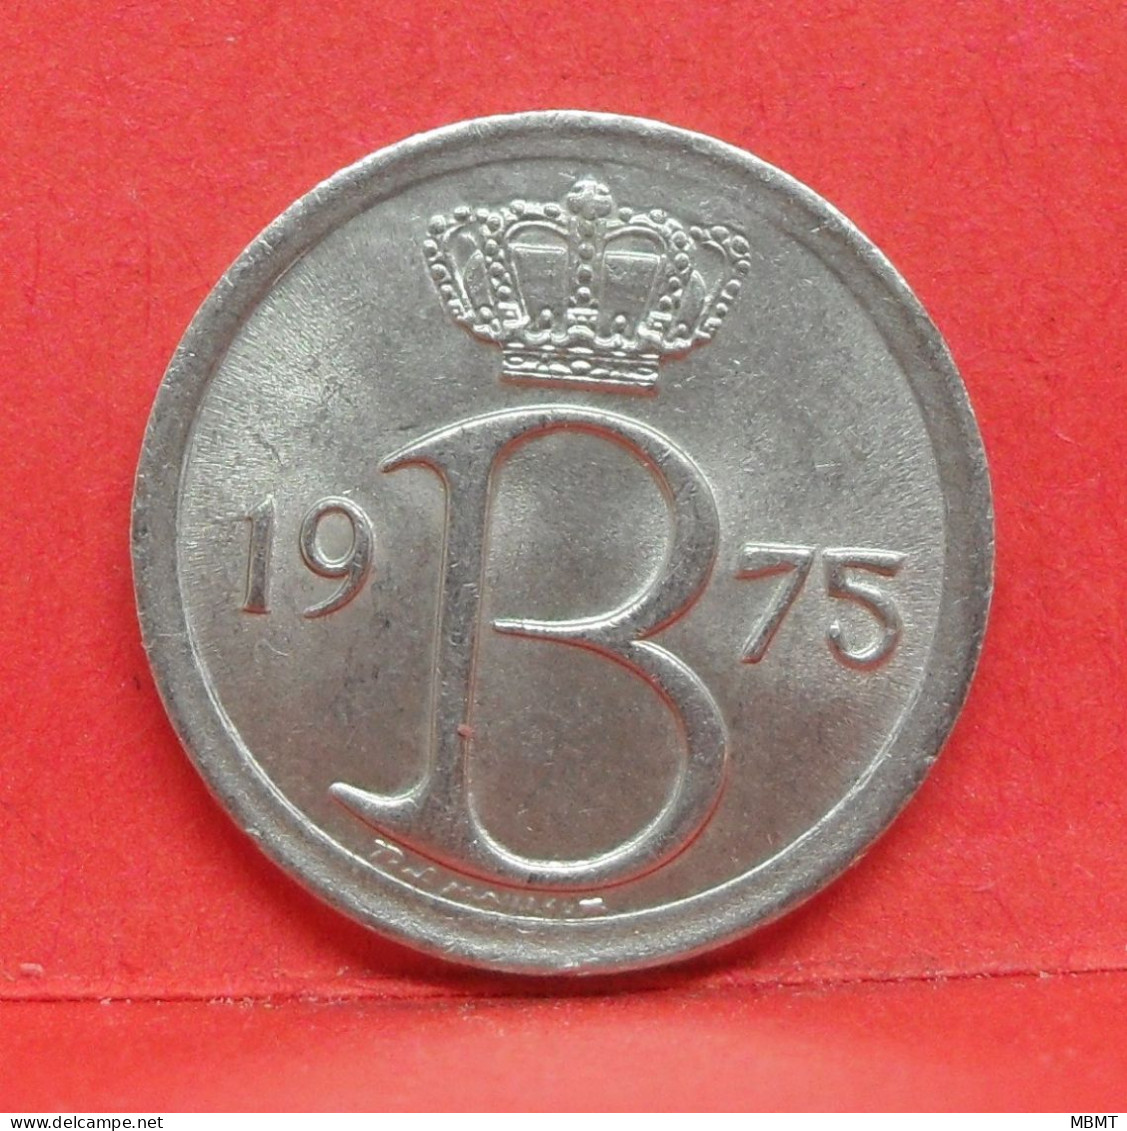 25 Centimes 1975 - TTB - Pièce Monnaie Belgie - Article N°1872 - 25 Cents